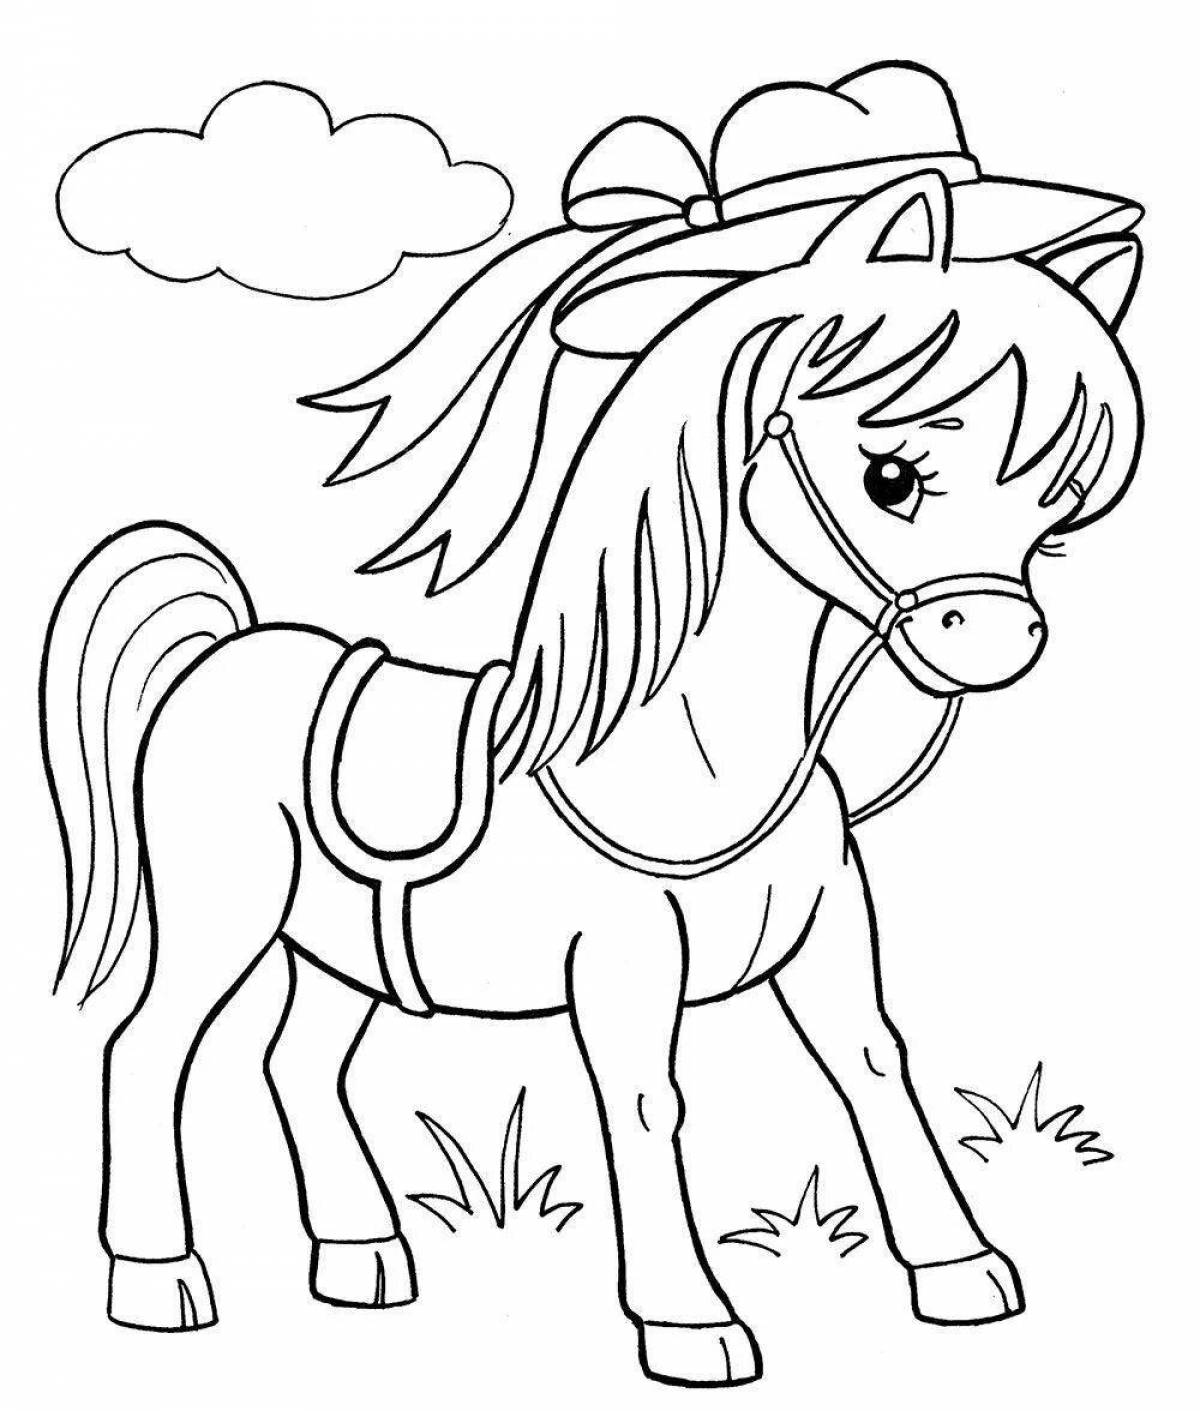 Раскрашиваем лошадку. Раскраска. Лошадка. Лошадь для раскрашивания. Раскраски лошадки для девочек. Лошадь раскраска для детей.